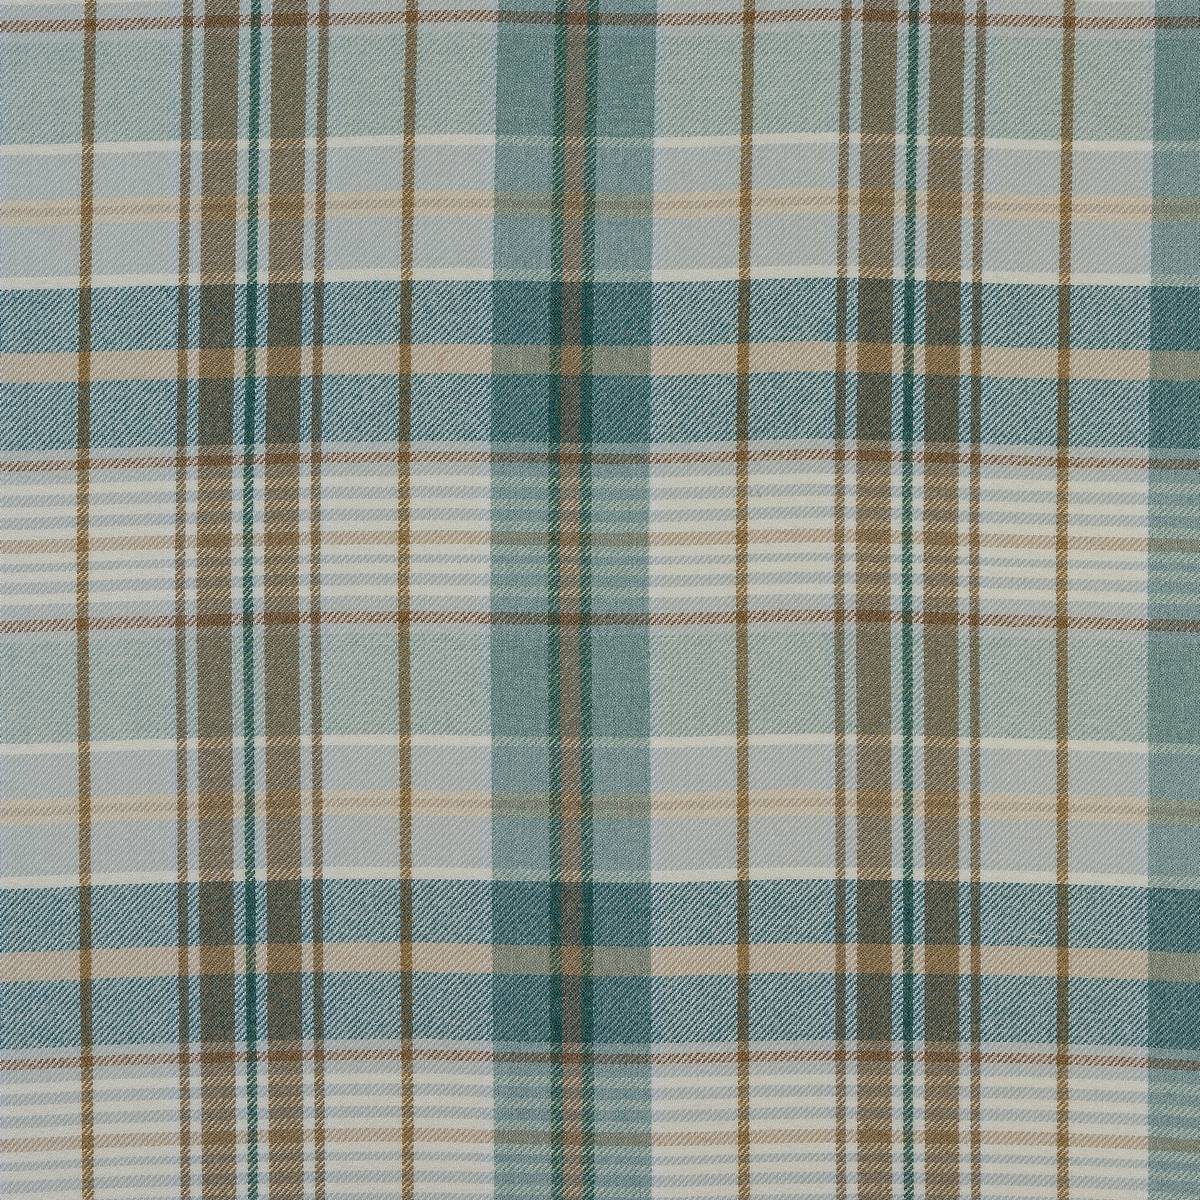 Troon Seafoam Fabric by Fryetts